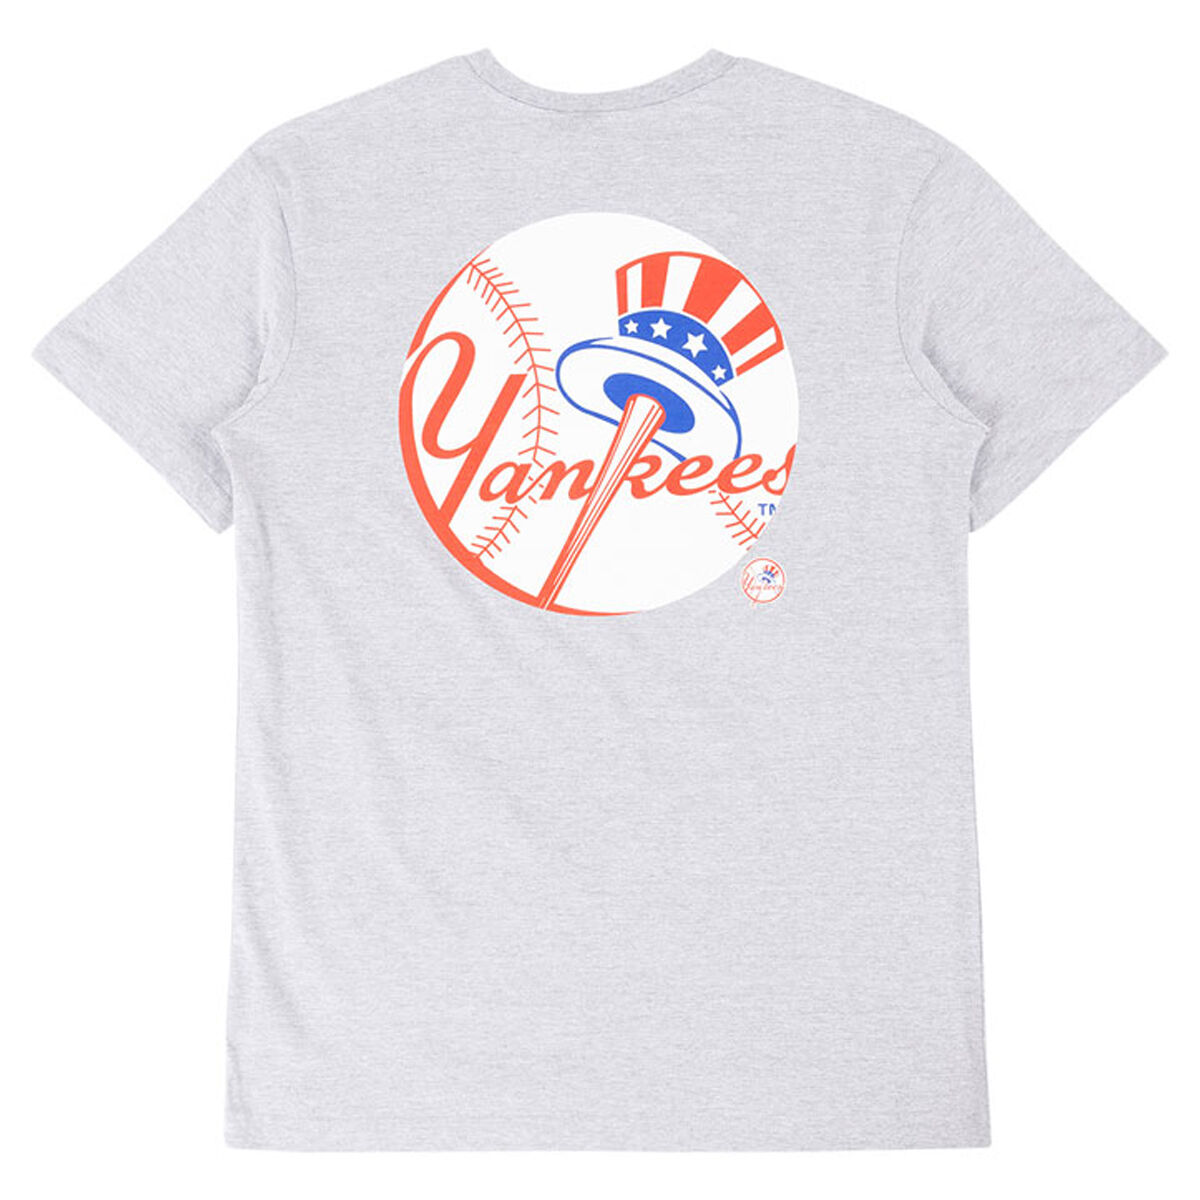 New York Yankees Jerseys & Teamwear | MLB Merch | rebel